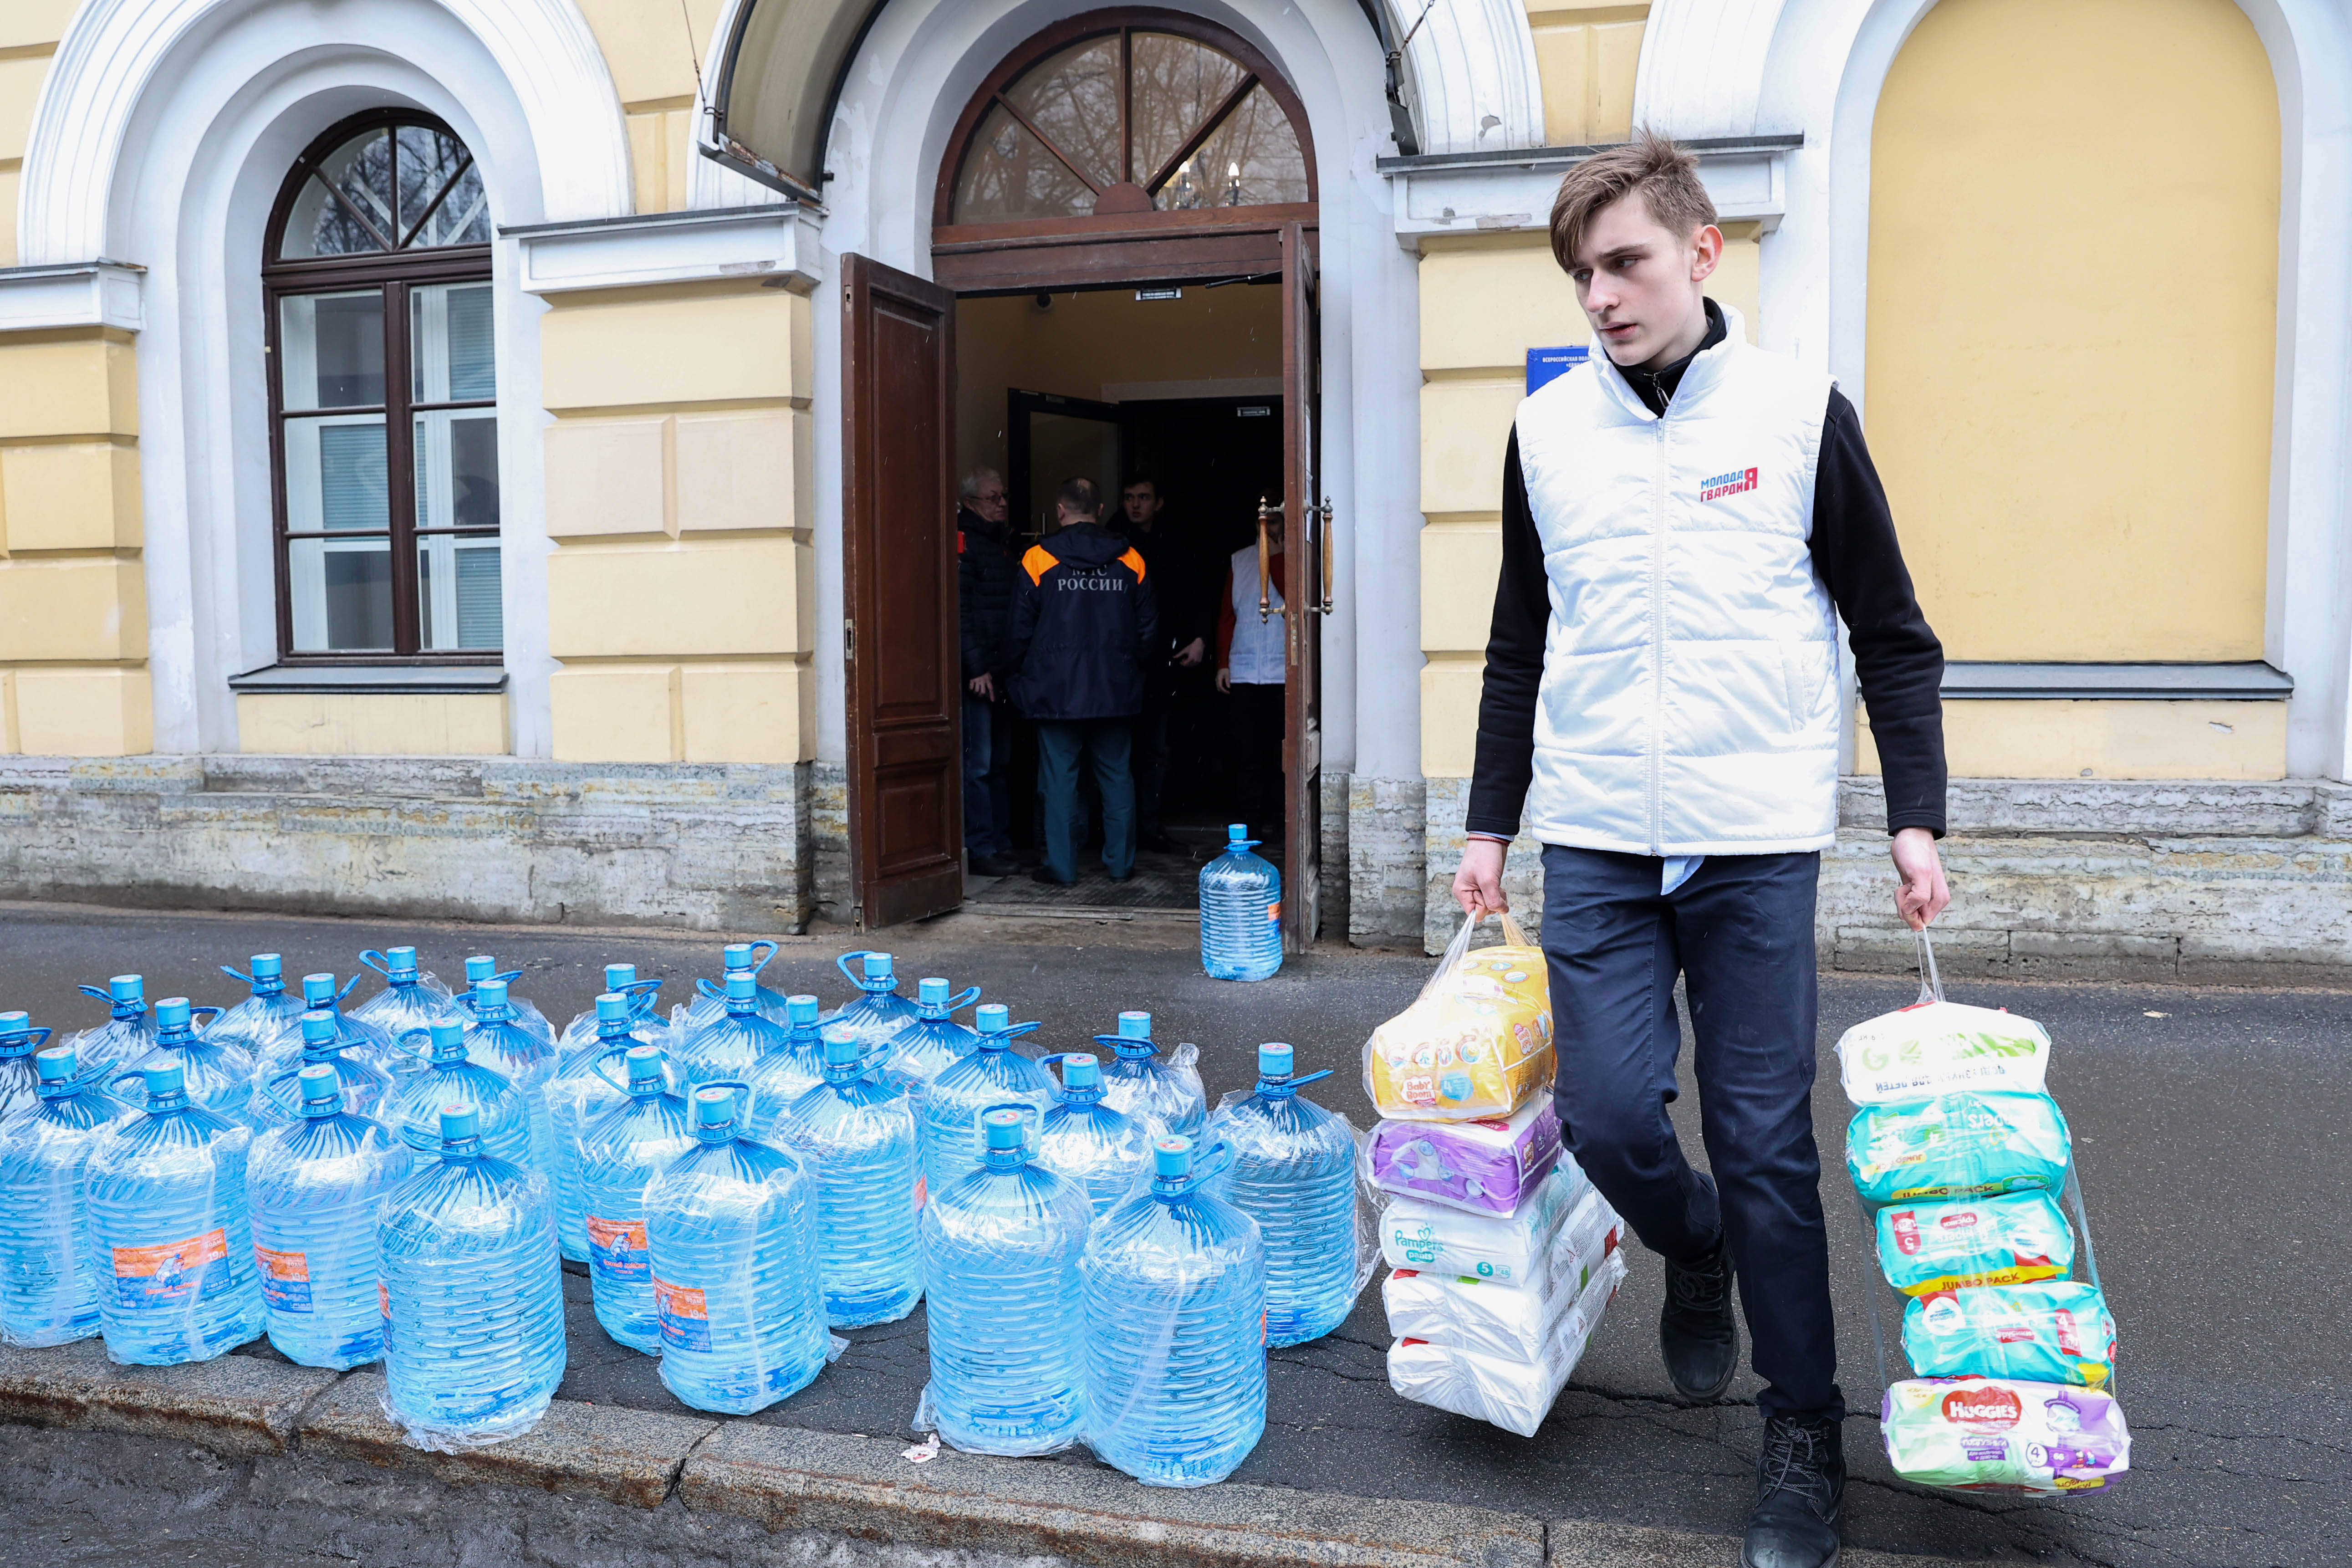 Гуманитарная помощь для эвакуированных жителей Донбасса. Санкт-Петербург